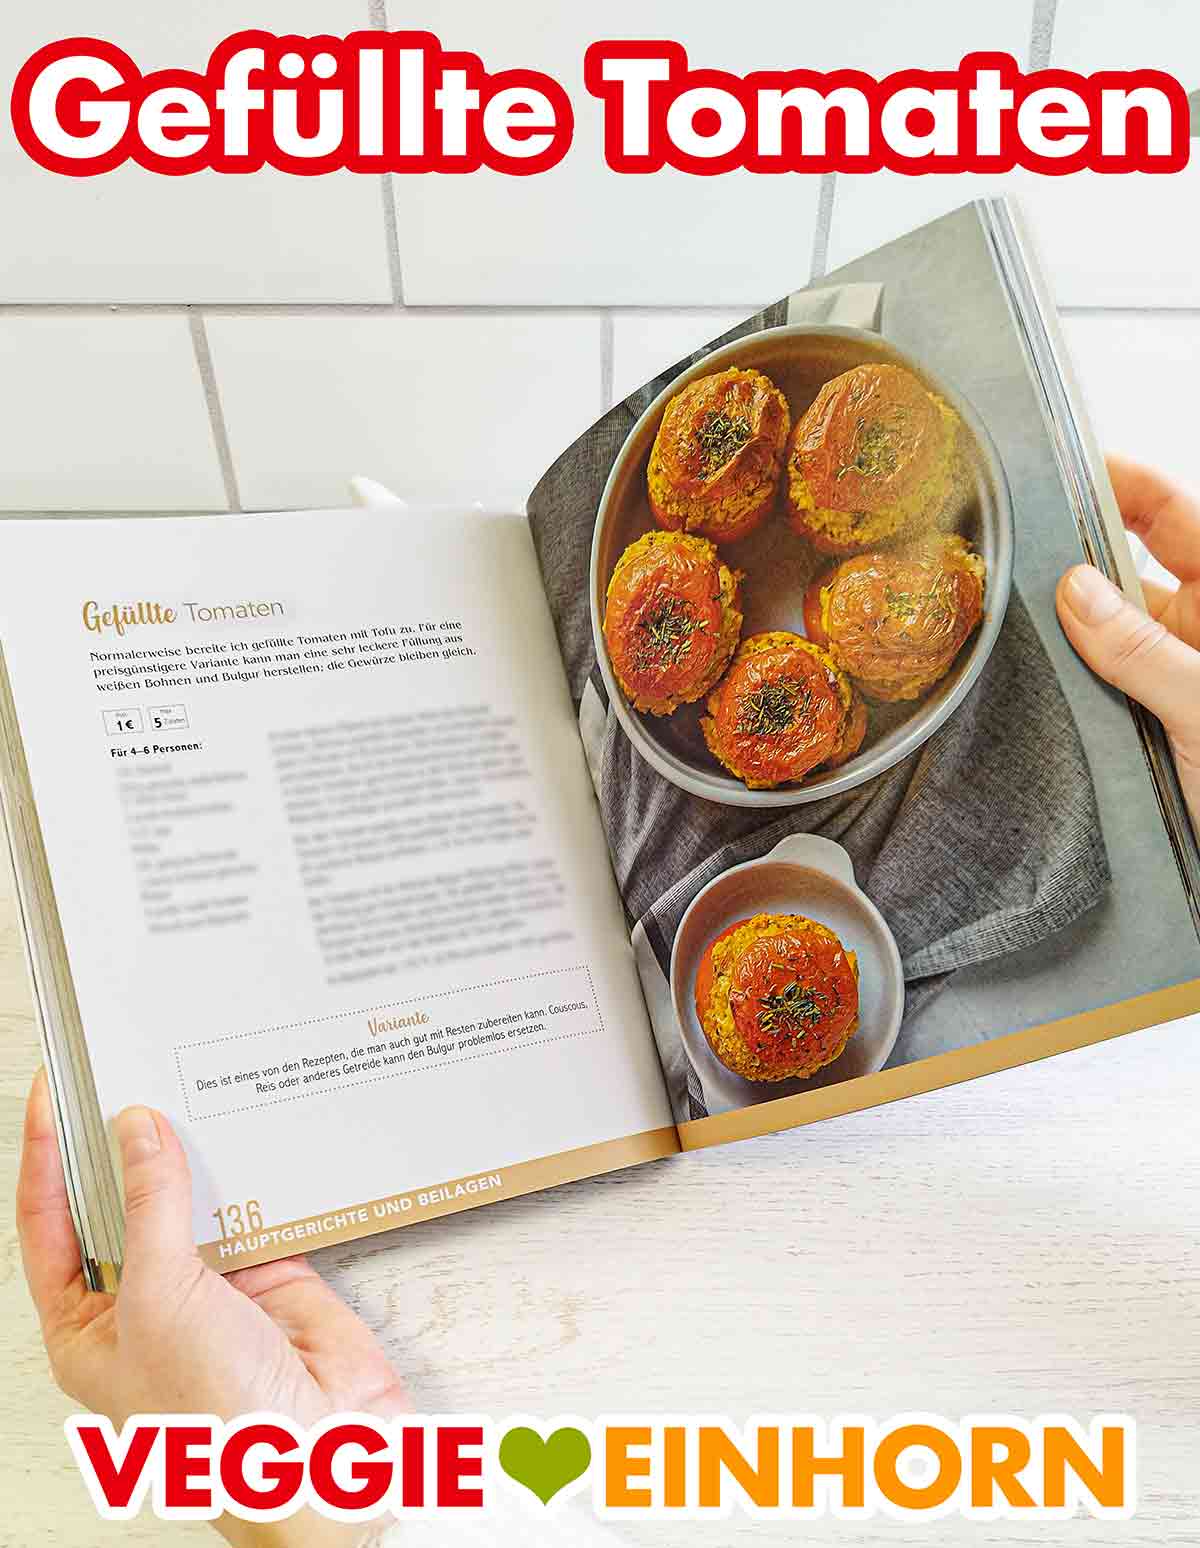 Gefüllte Tomaten im Kochbuch Vegan und Günstig von Marie Laforêt